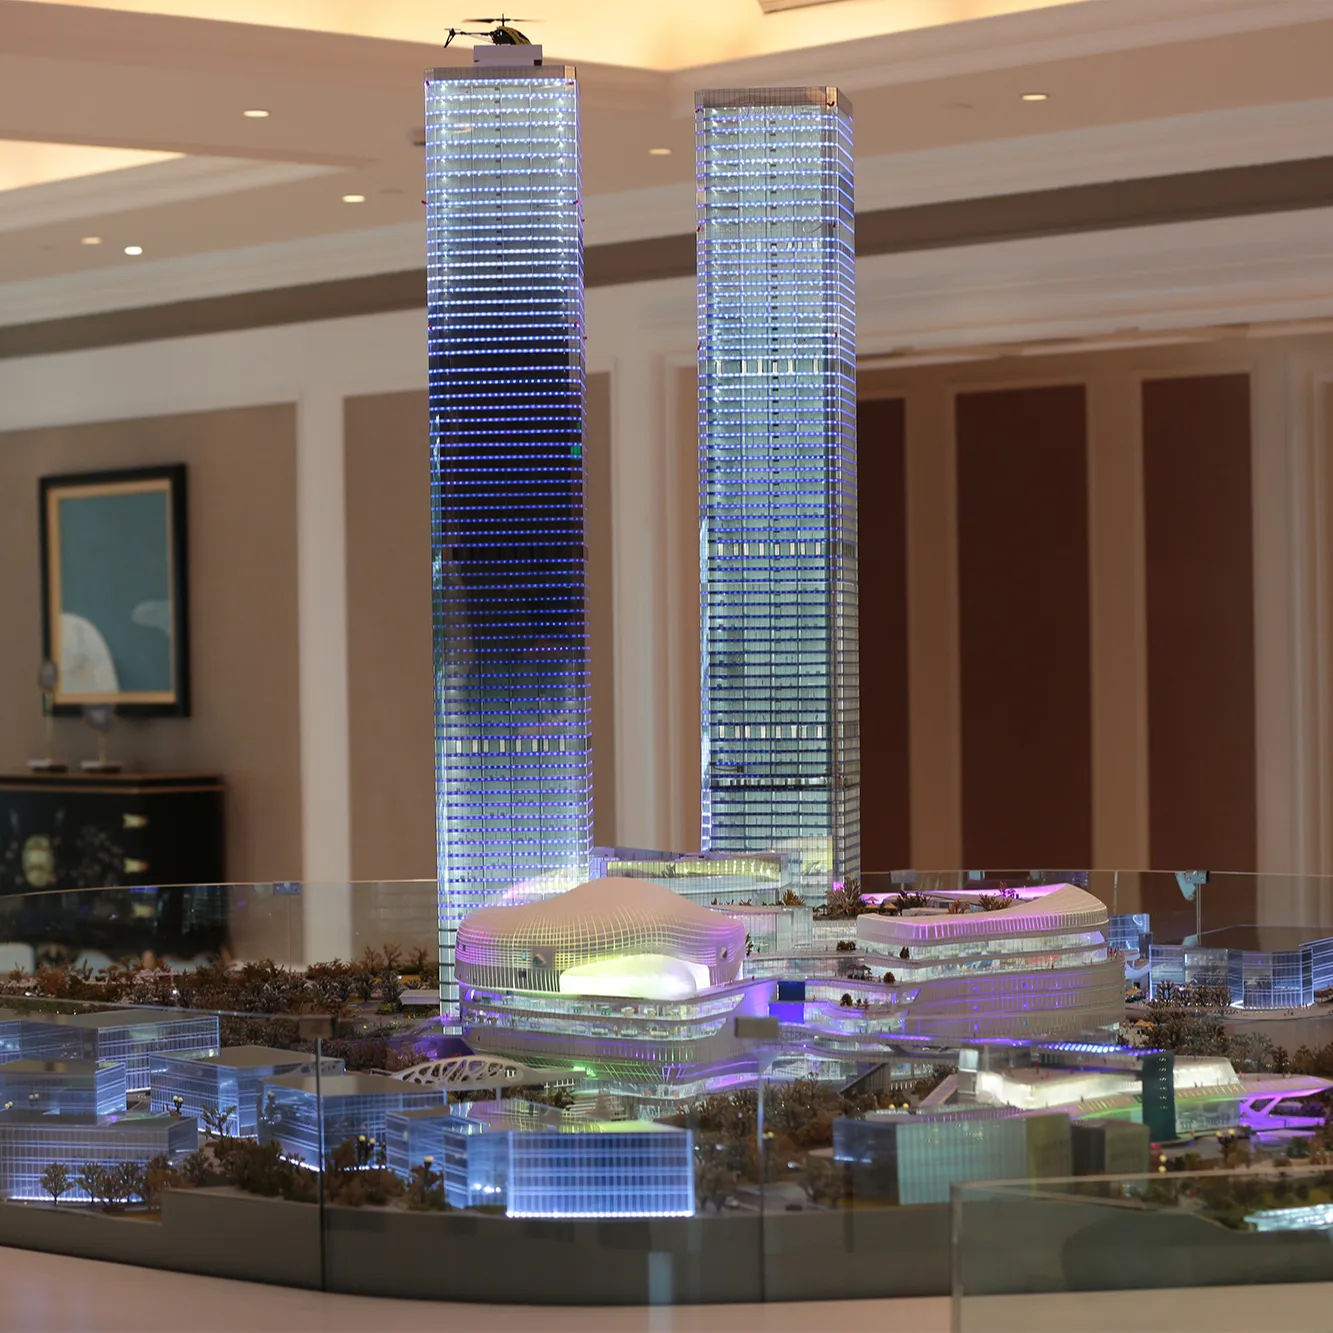 Modello di costruzione in scala architettonica professionale illuminazione a LED in scala personalizzata modello di pianificazione urbana che fa edificio immobiliare 3D